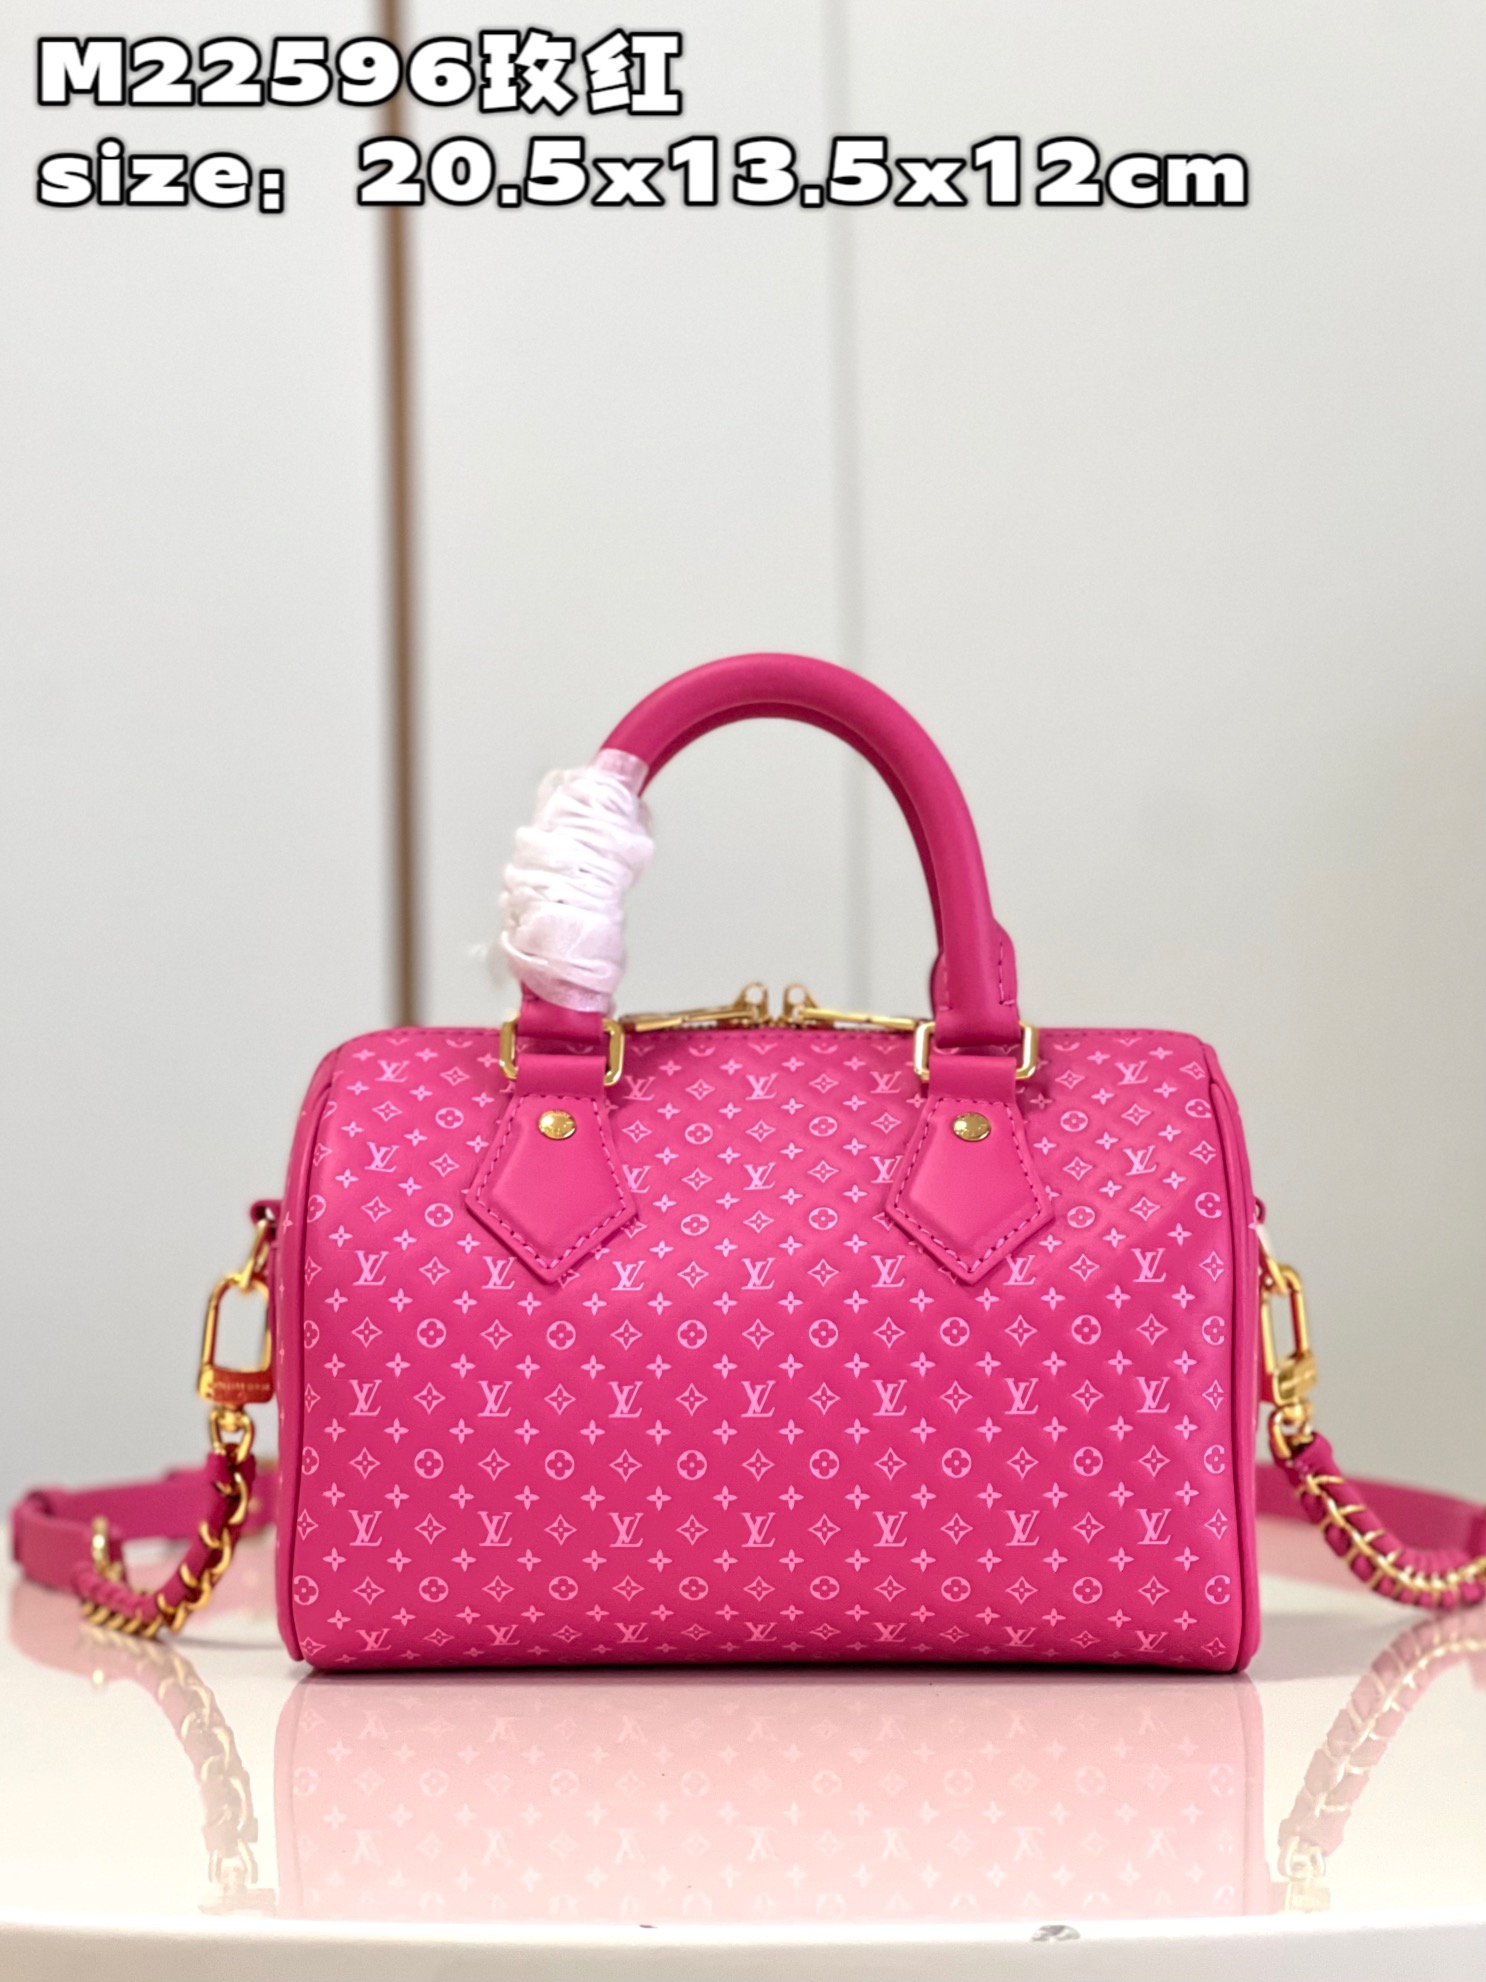 Louis Vuitton LV Speedy Bags Handbags Red Cowhide Mini M22596